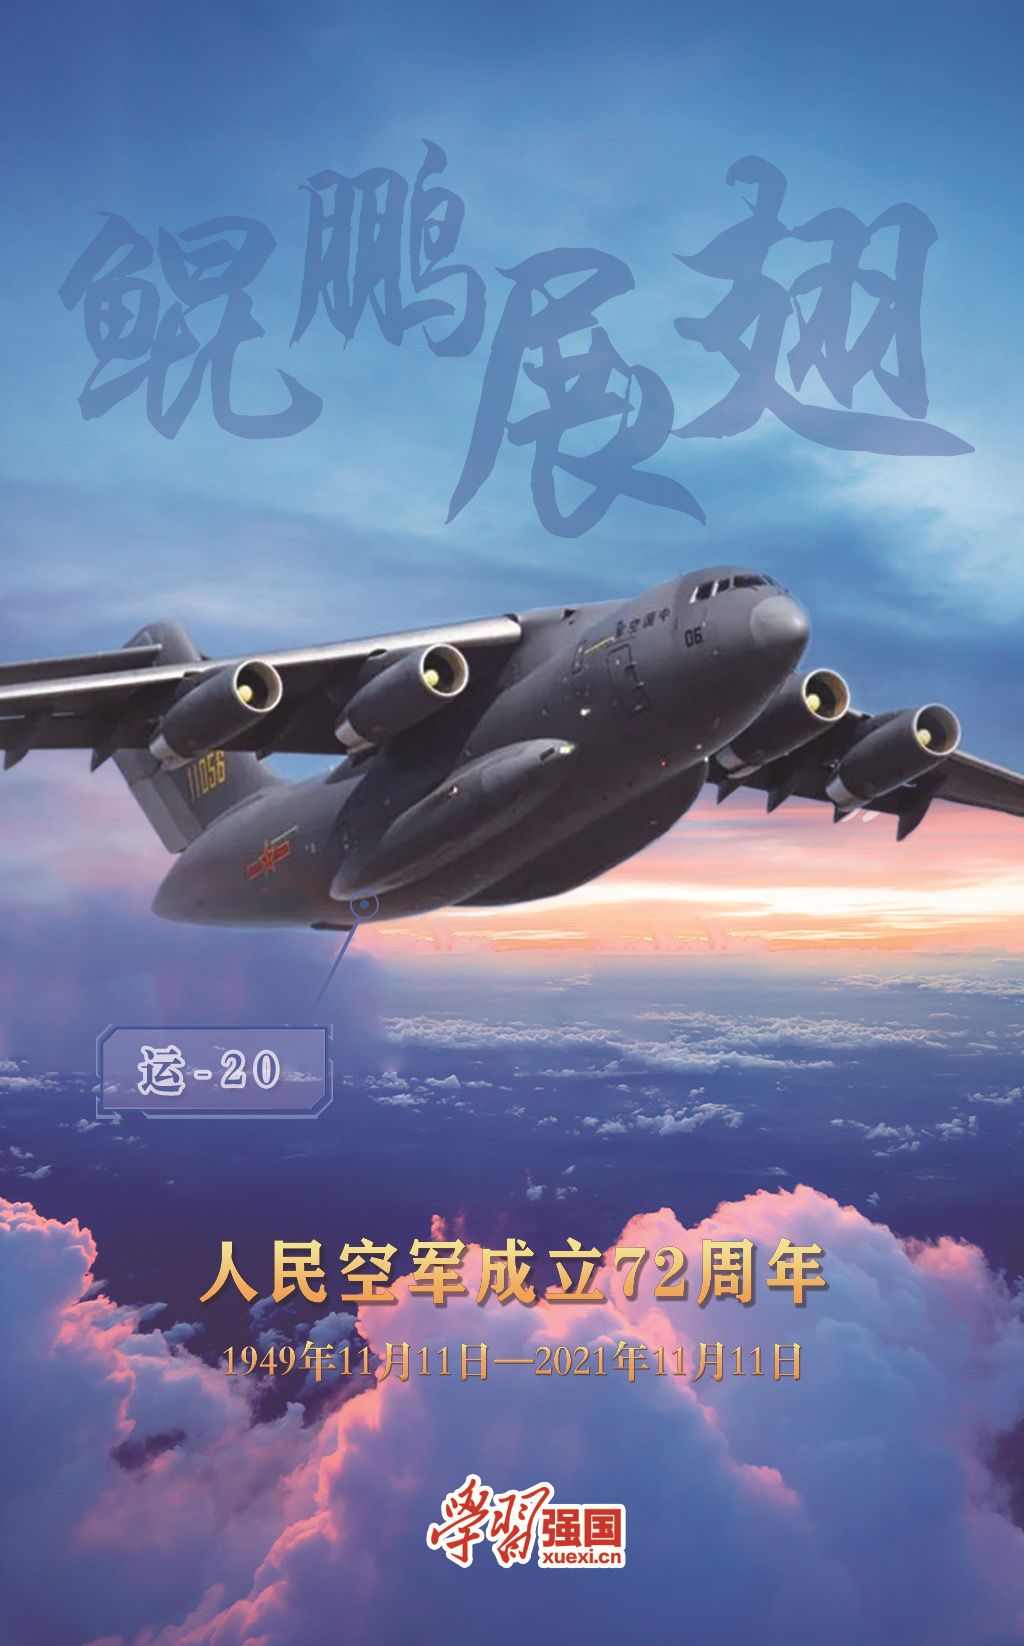 海报:庆祝人民空军成立72周年